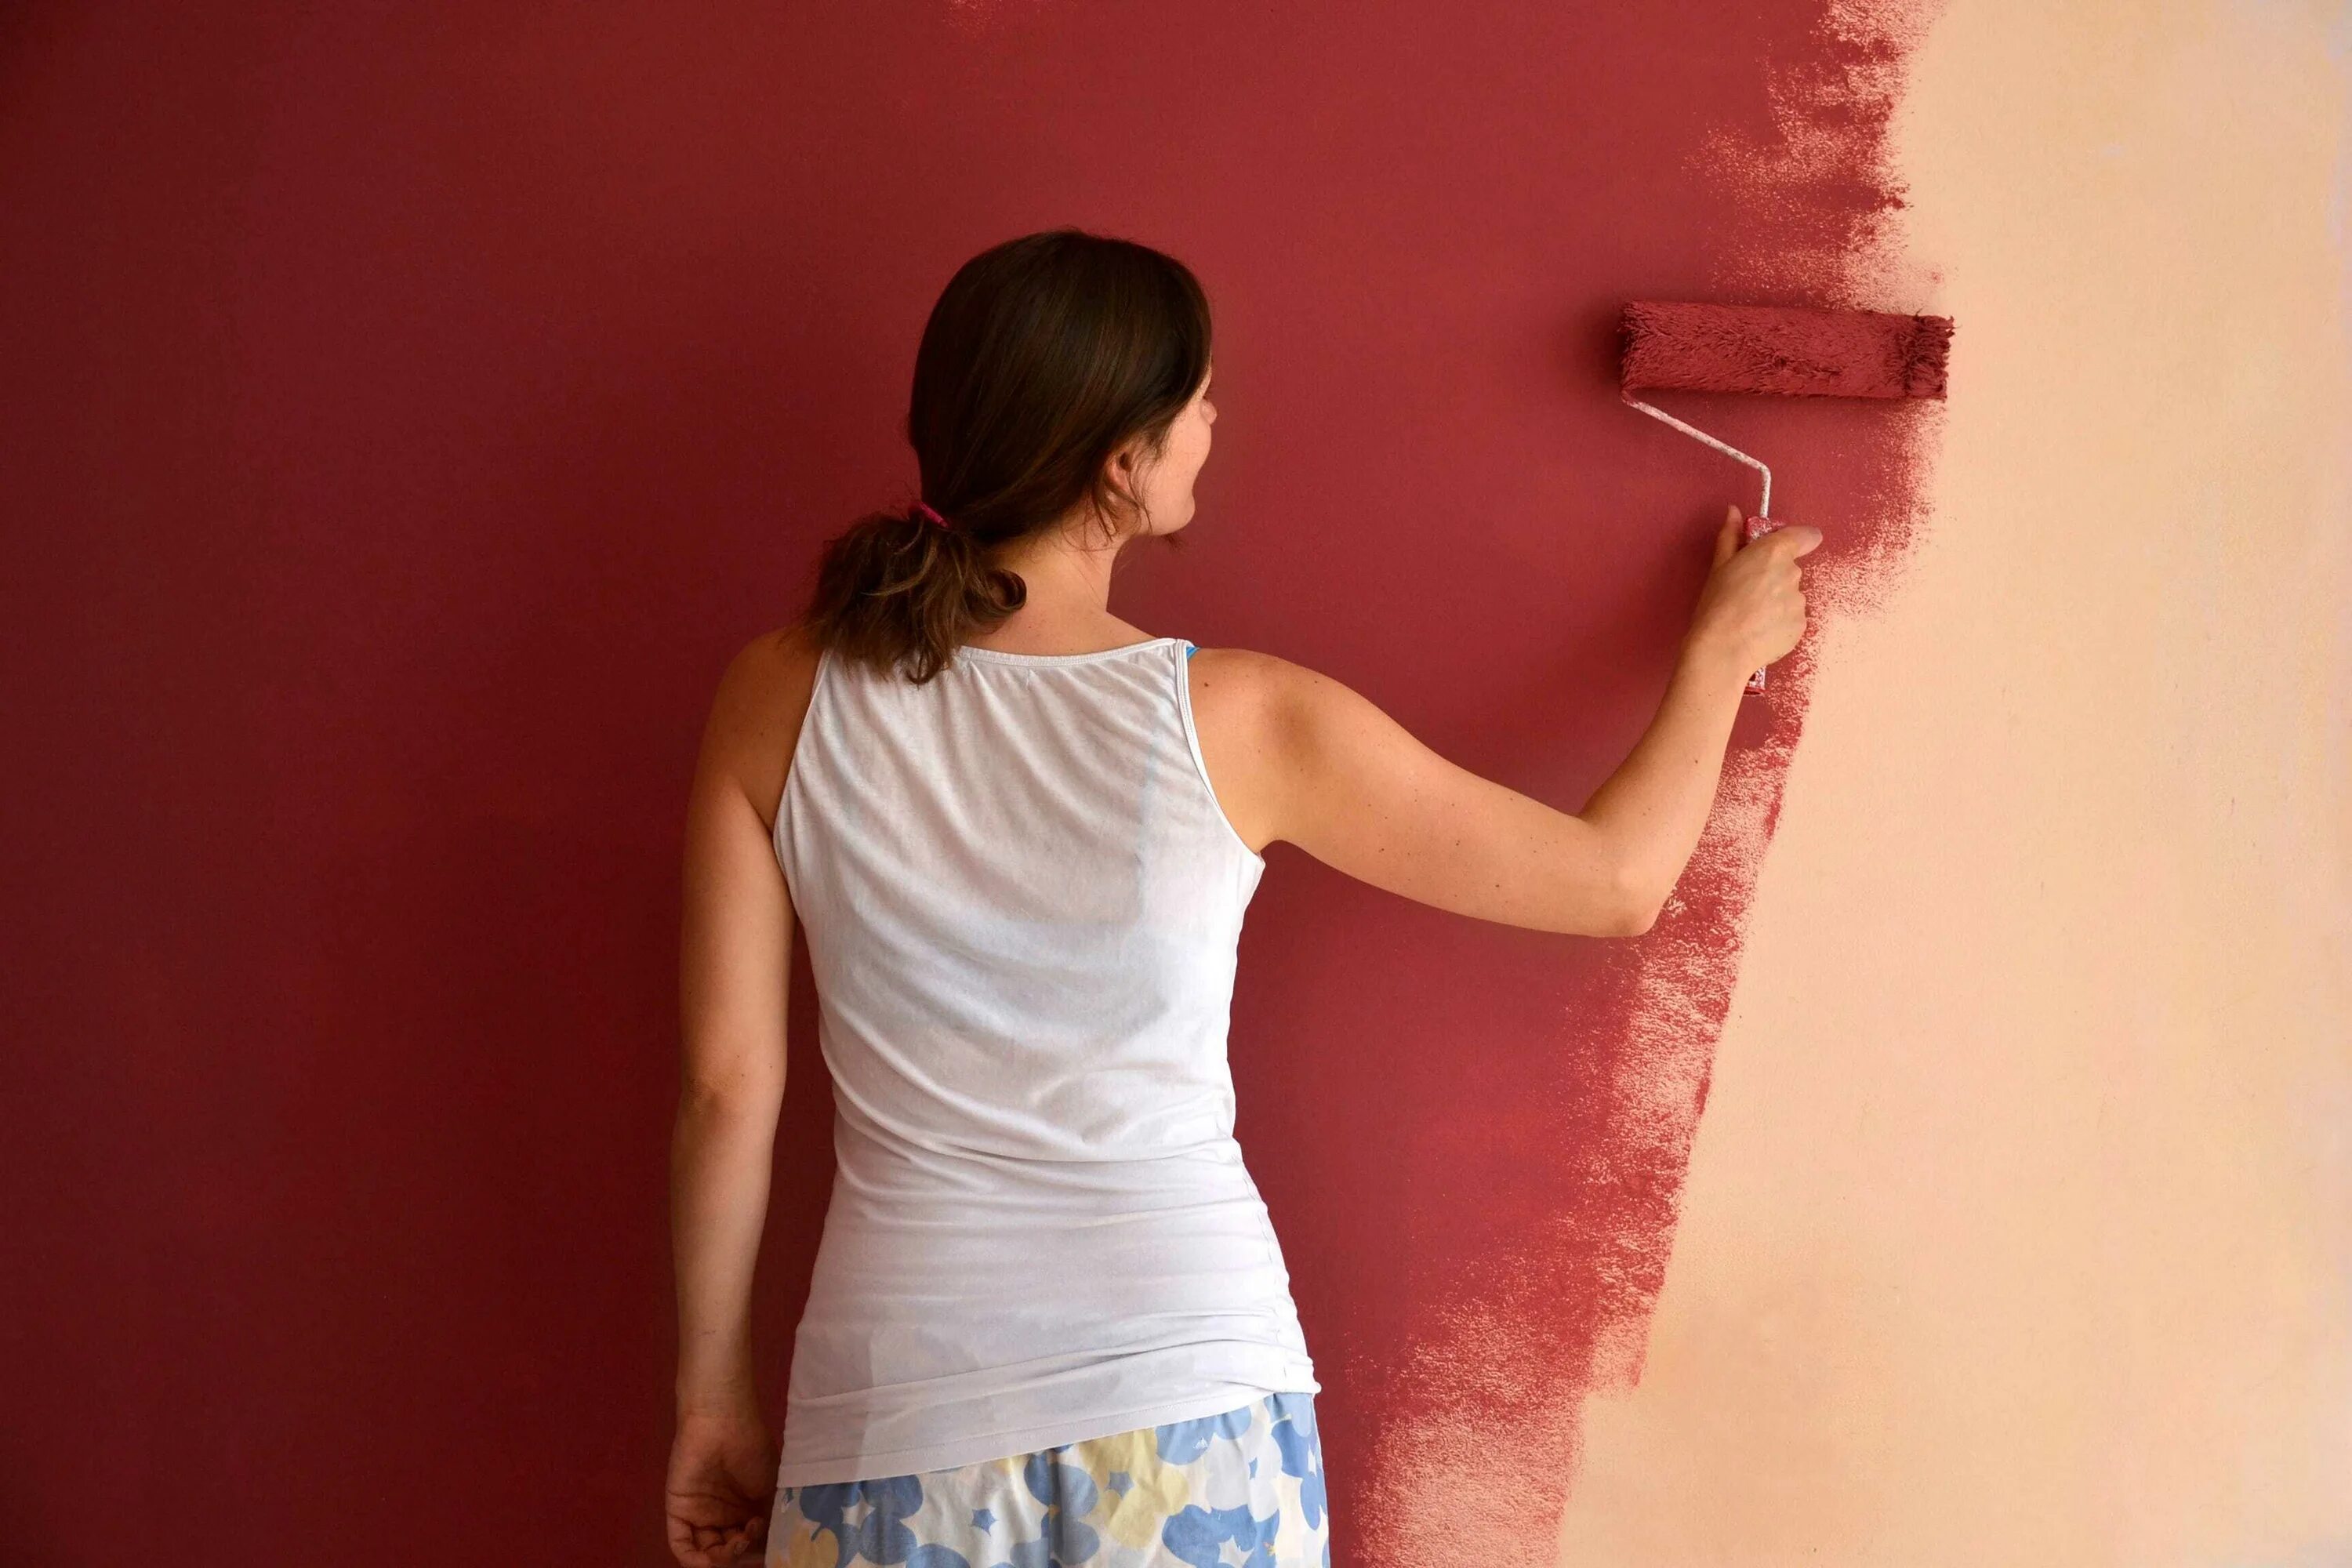 Лучшие краски для покраски обоев. Покрашенные стены. Красивая краска для стен. Покраска стен в квартире. Стены Покрашенные краской.